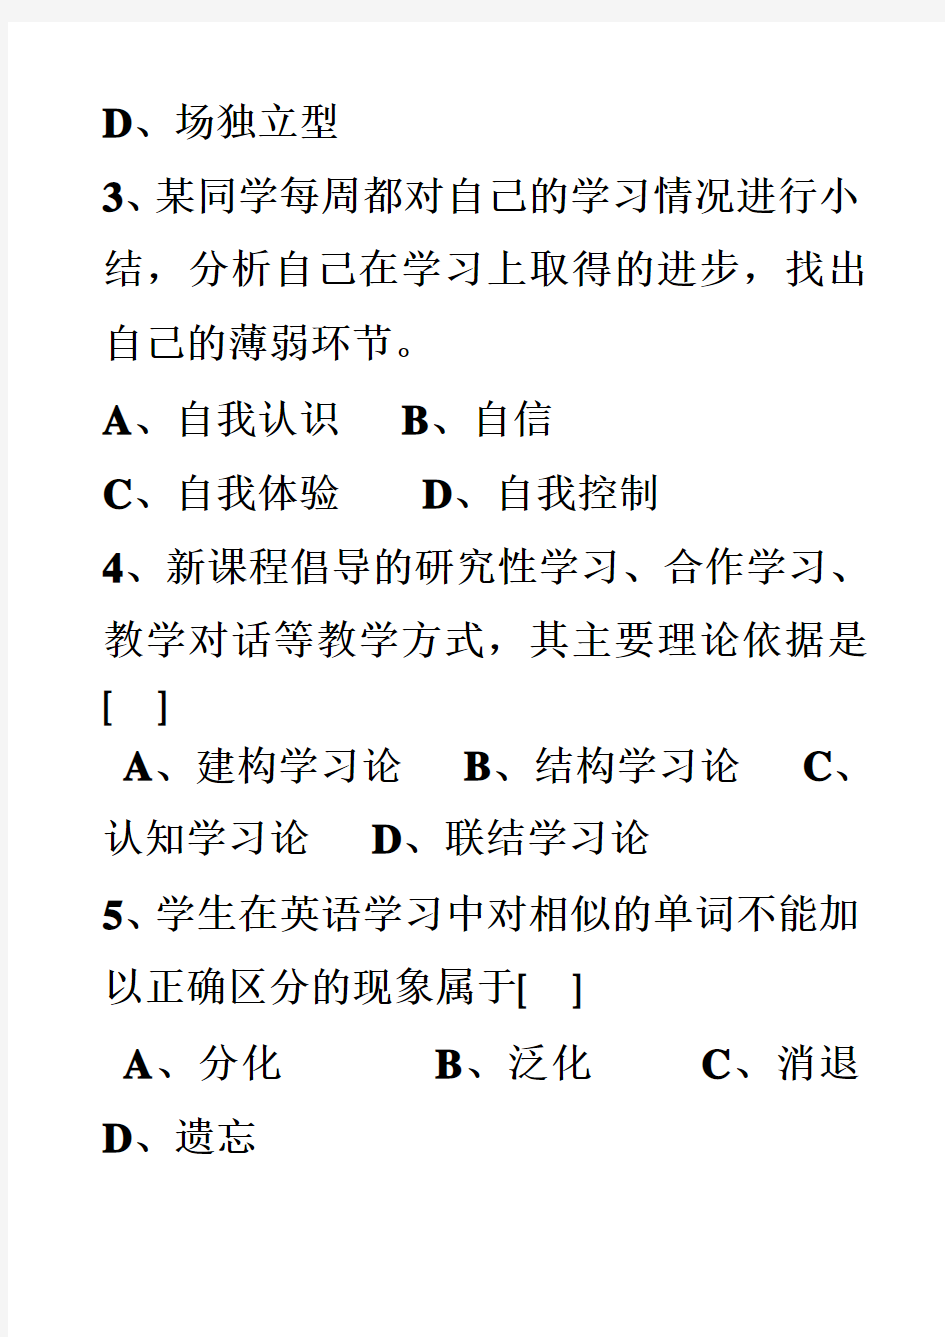 2007年湖南省中小学教师资格证中学教育心理学试卷